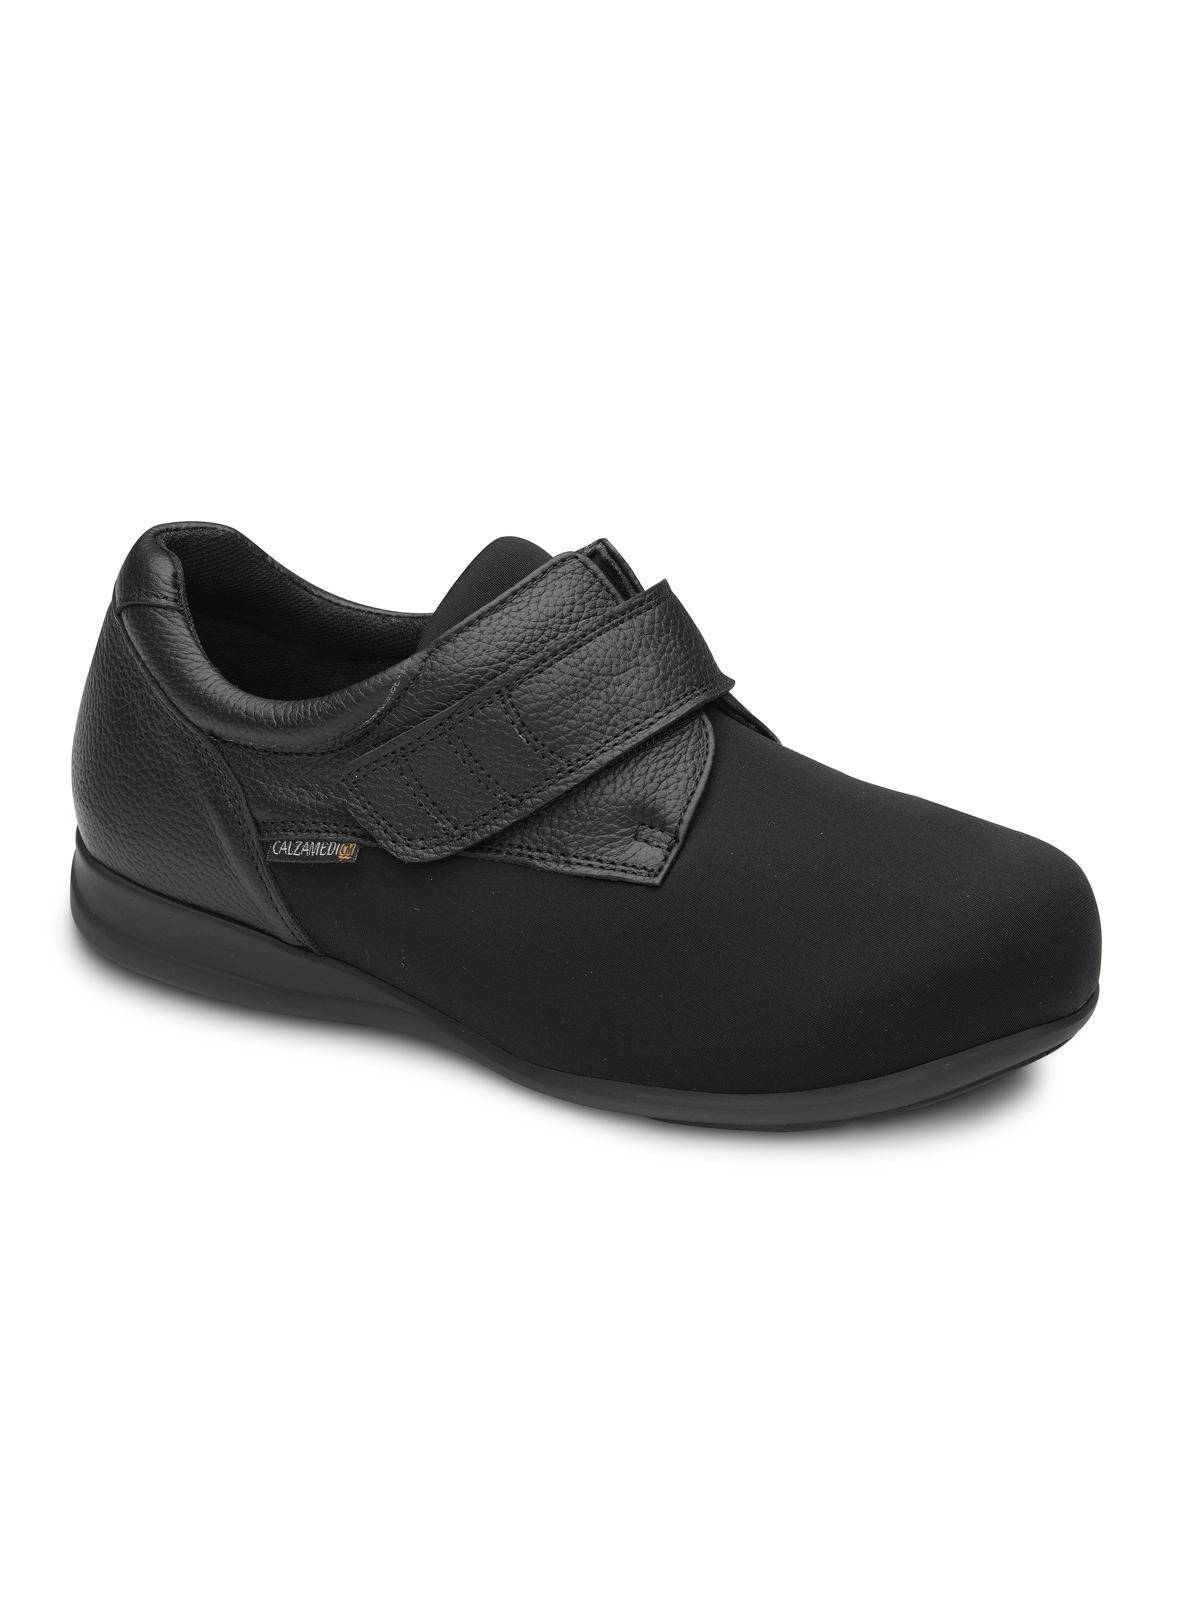 Zapato Unisex Calzamedi 0710 Negro